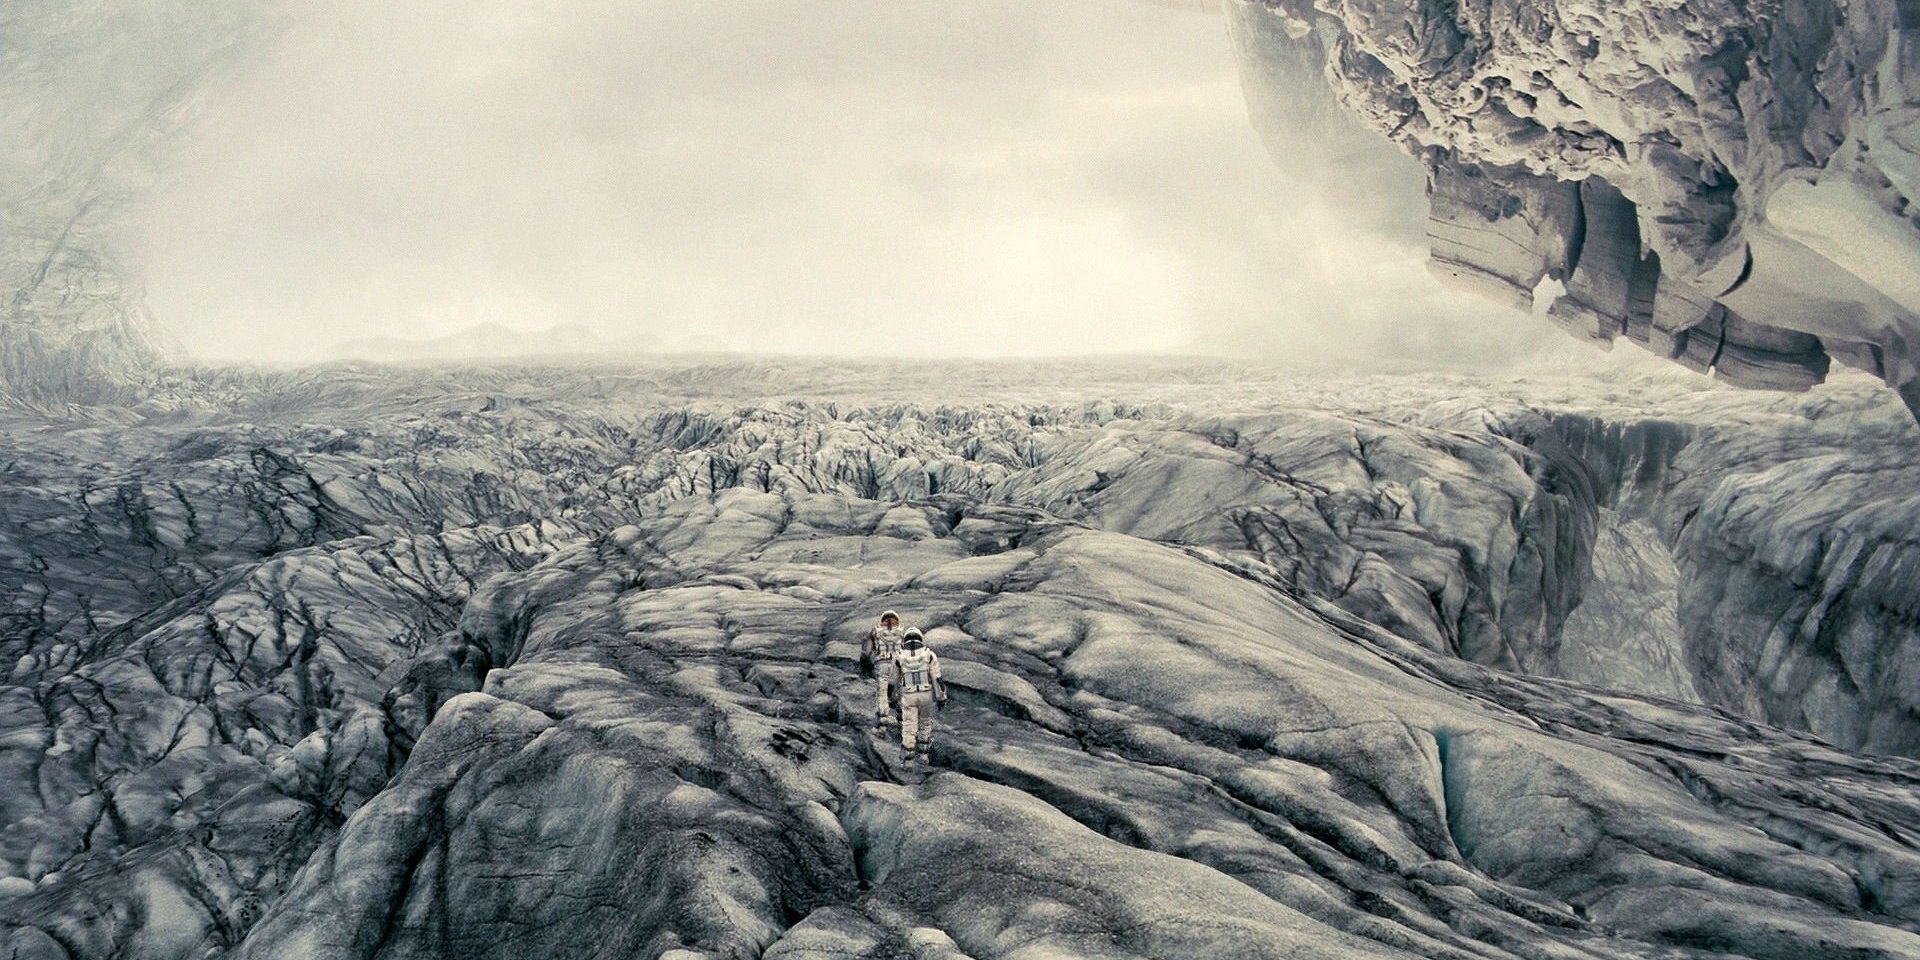 Наука в фильме «Интерстеллар»: твёрдые ледяные облака на планете Манн просто не могут существовать